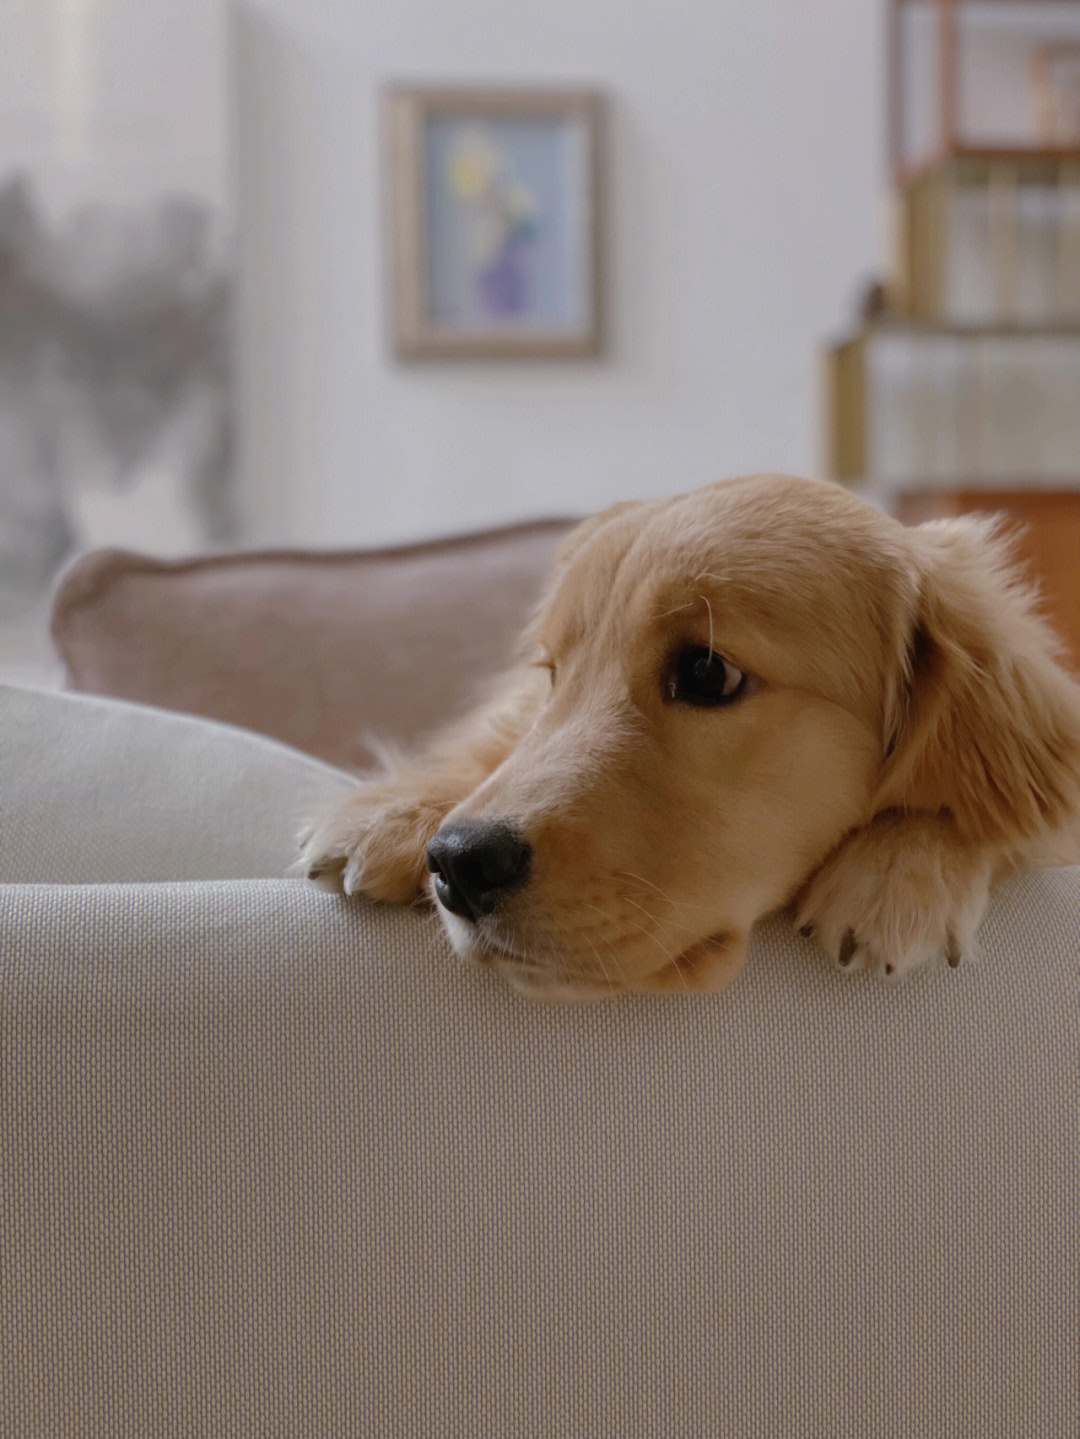 呆巴巴的黄狗,可能对自己体型有误解,酷爱藏在沙发垫子里 